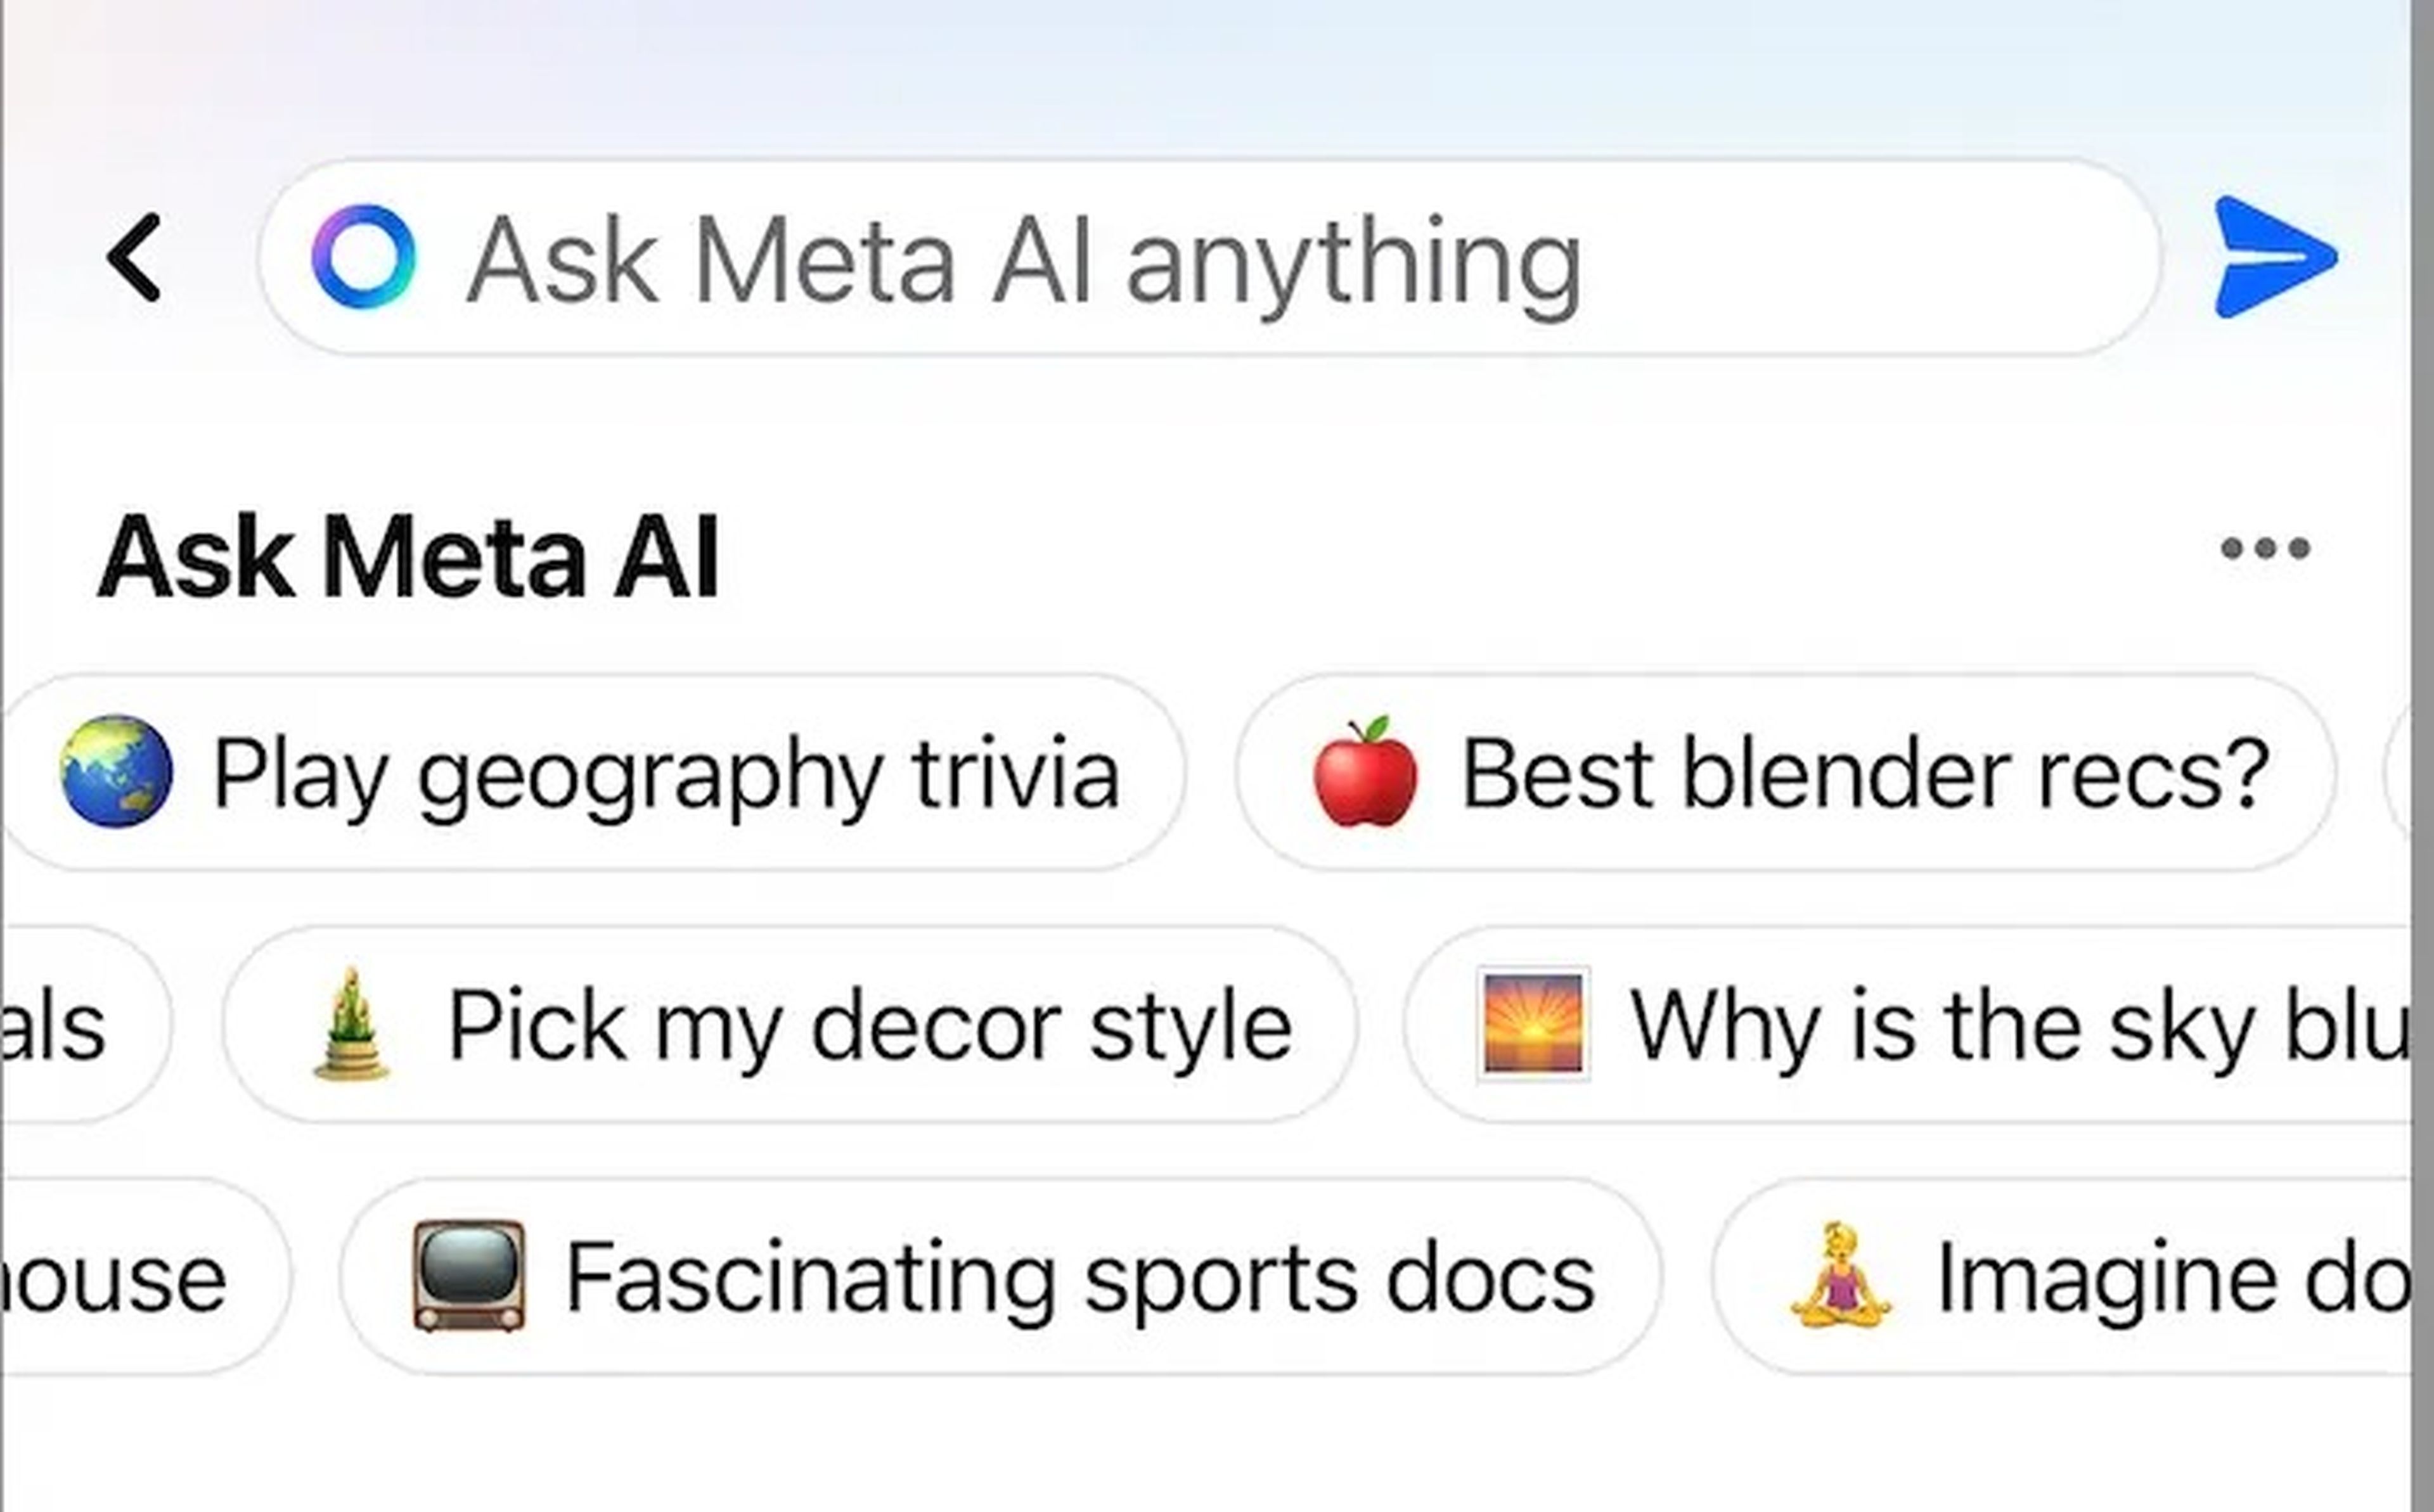 La búsqueda por IA de Meta es rara y extraña y no estoy segura de a quien va dirigida.